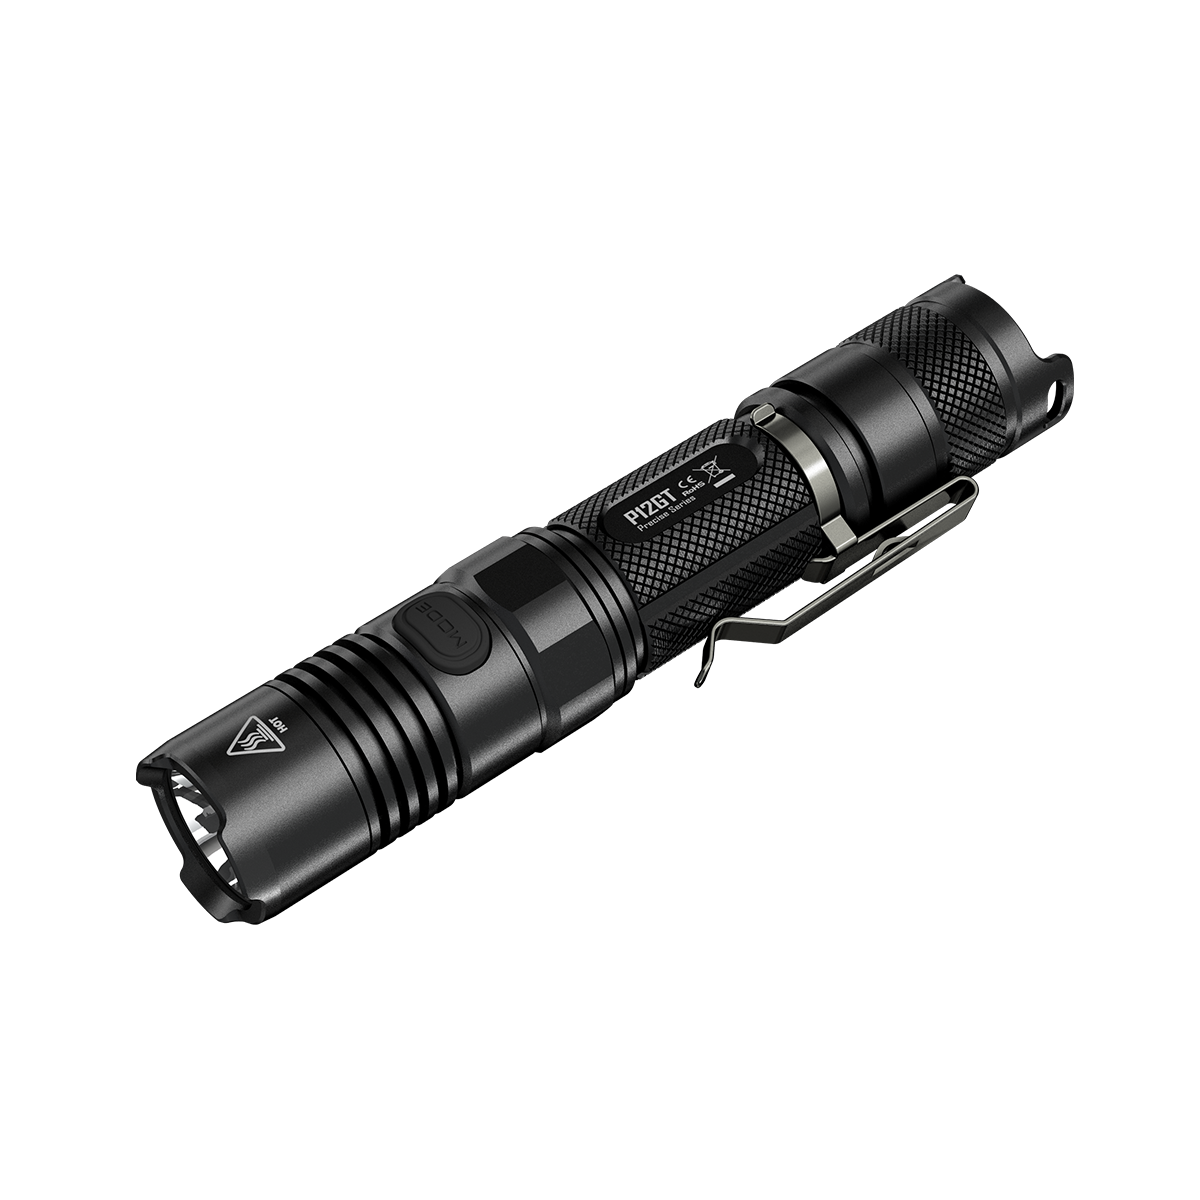 NITECORE P12GT Flashlight Xp-l Hi V3 LED 1000 LM for sale online 